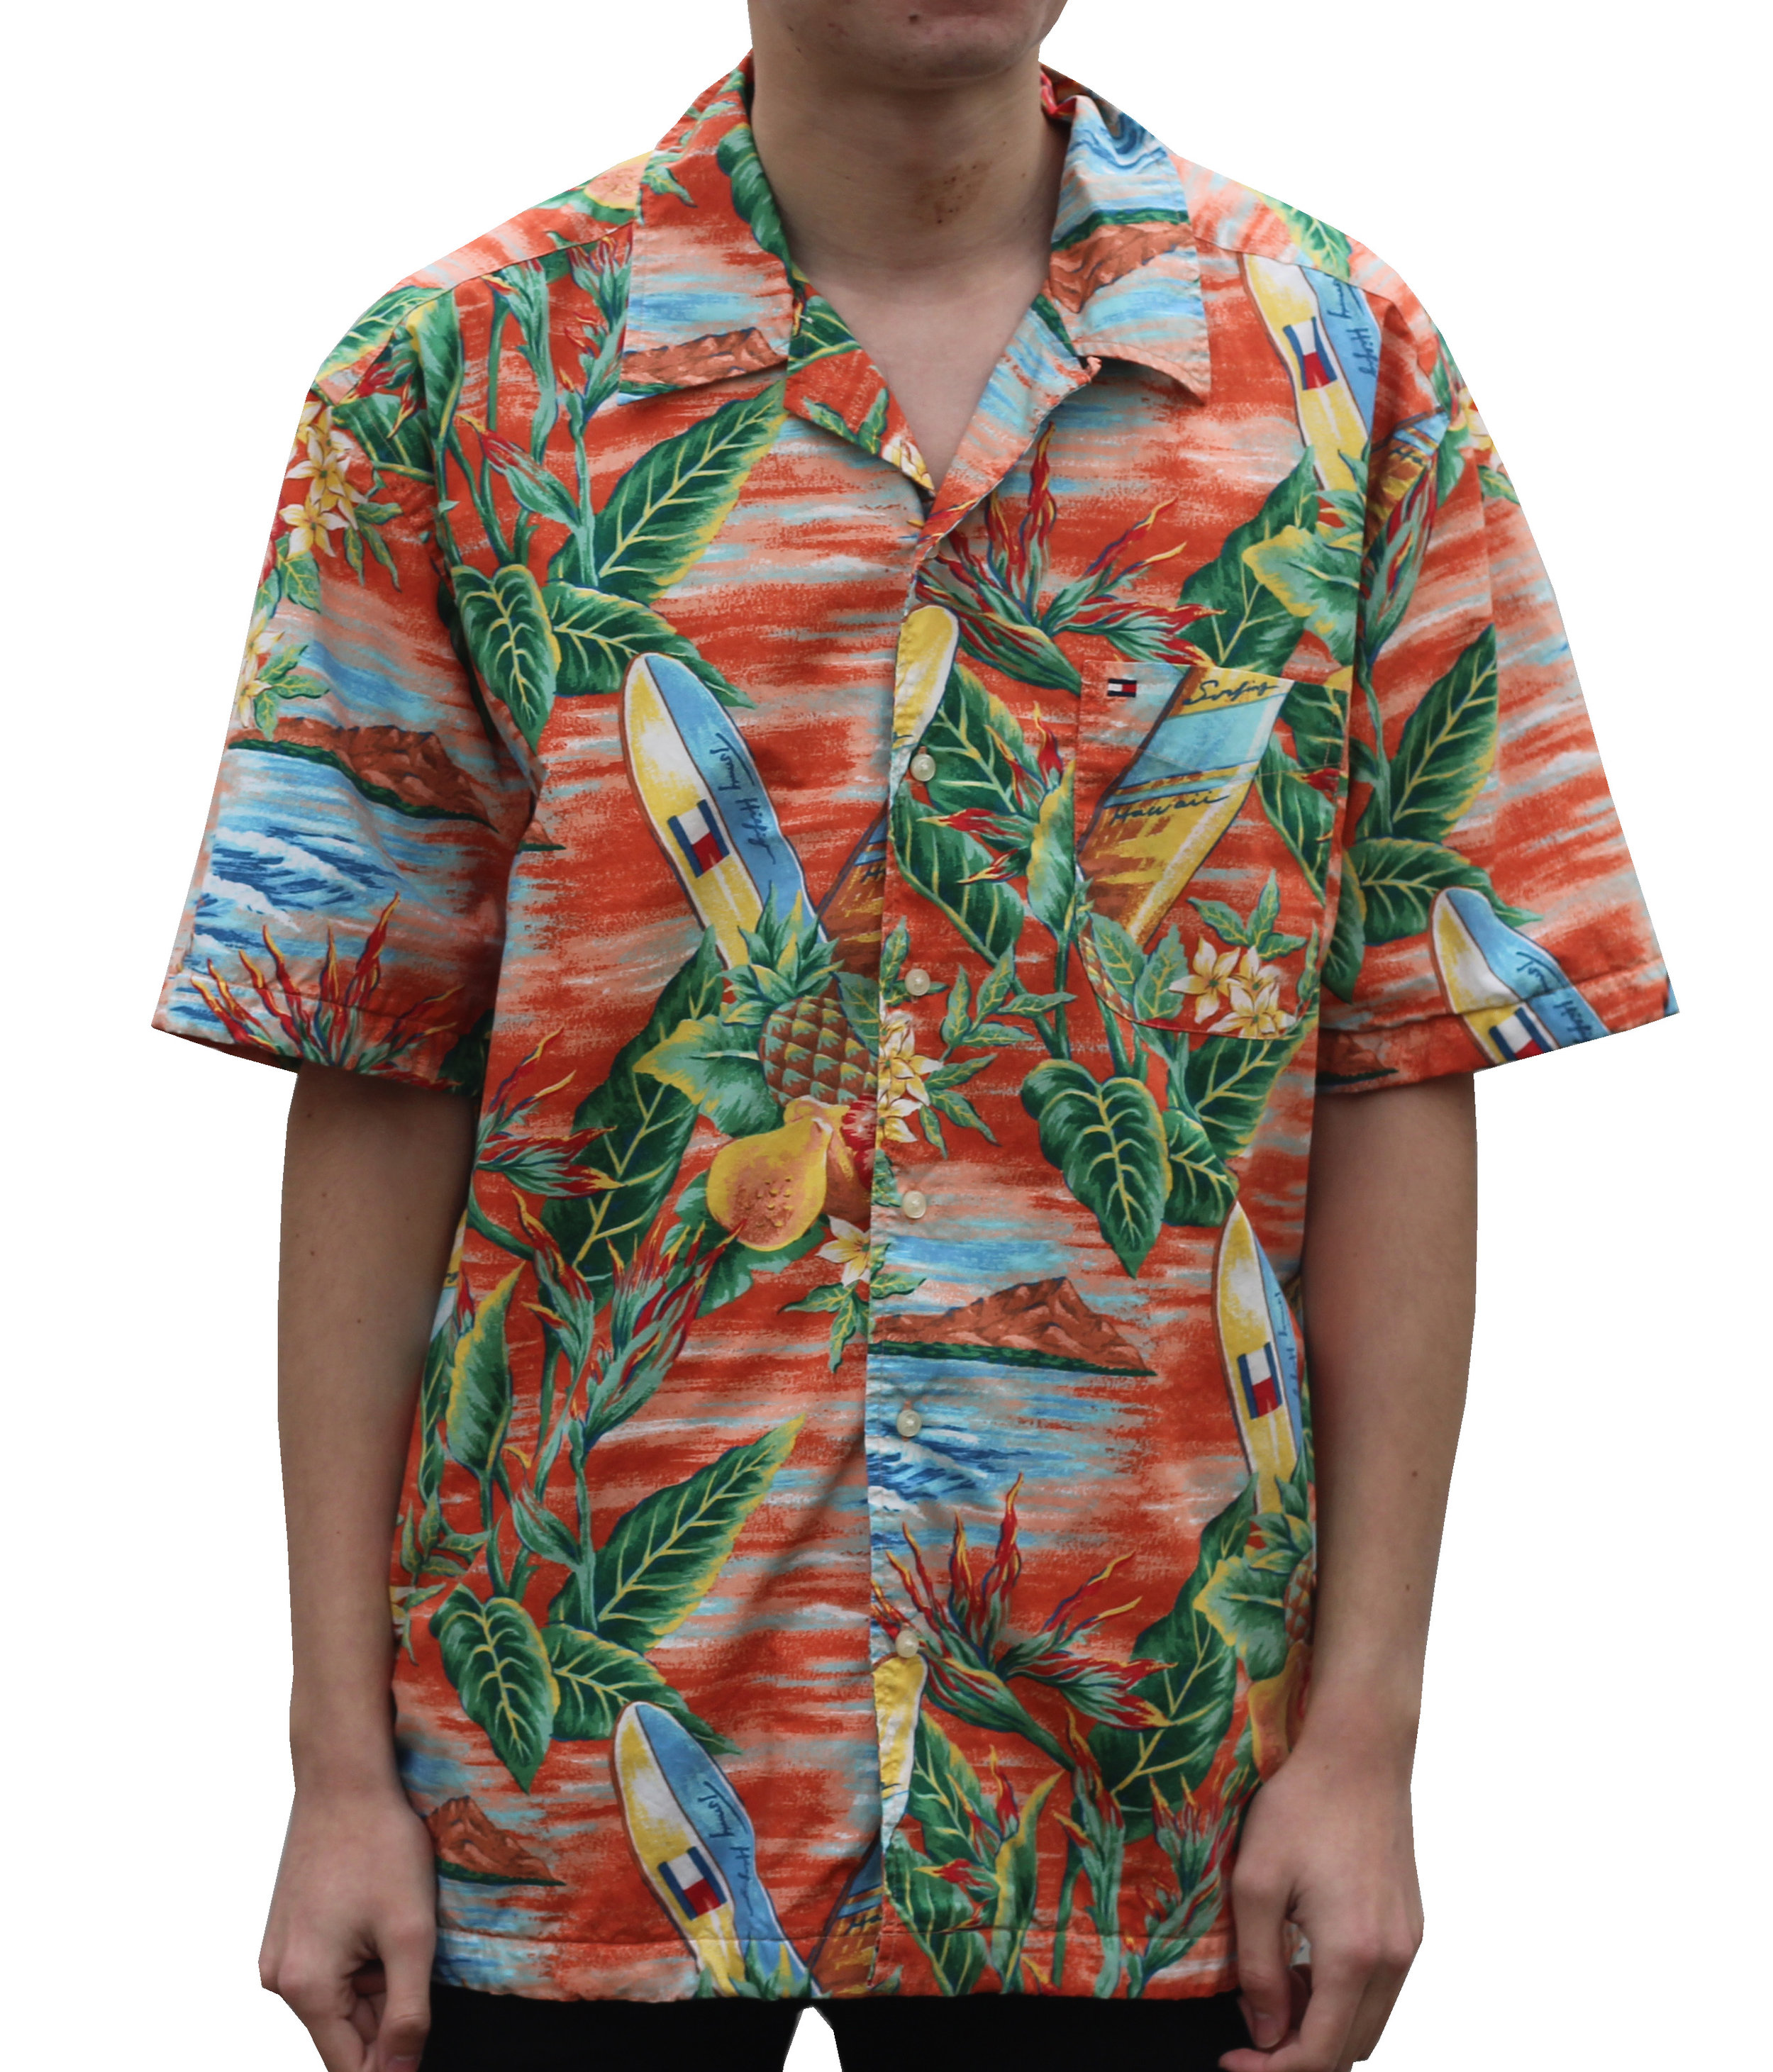 tommy hilfiger beach shirt